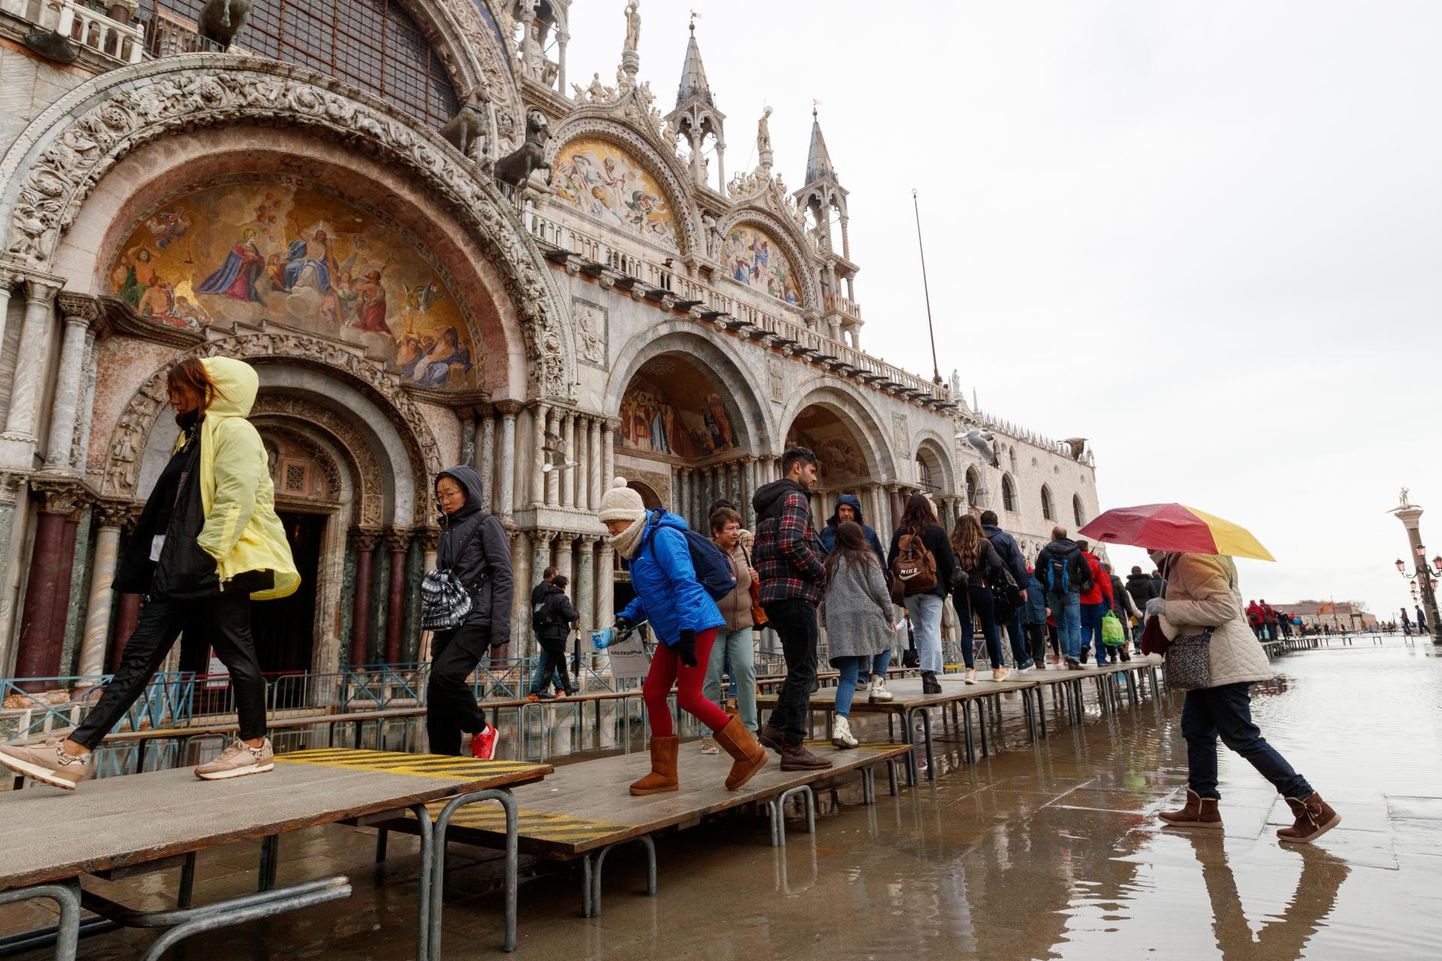 Eelmisel nädalal tabasid Veneetsiat viimase 50 aasta tõsiseimad üleujutused, mille kahjud võivad ulatuda kuni miljardi euroni. Püha Markuse väljakult kuiva jalaga üle saamiseks tuli veel sellelgi nädalal kasutada spetsiaalseid kõrgendusi.